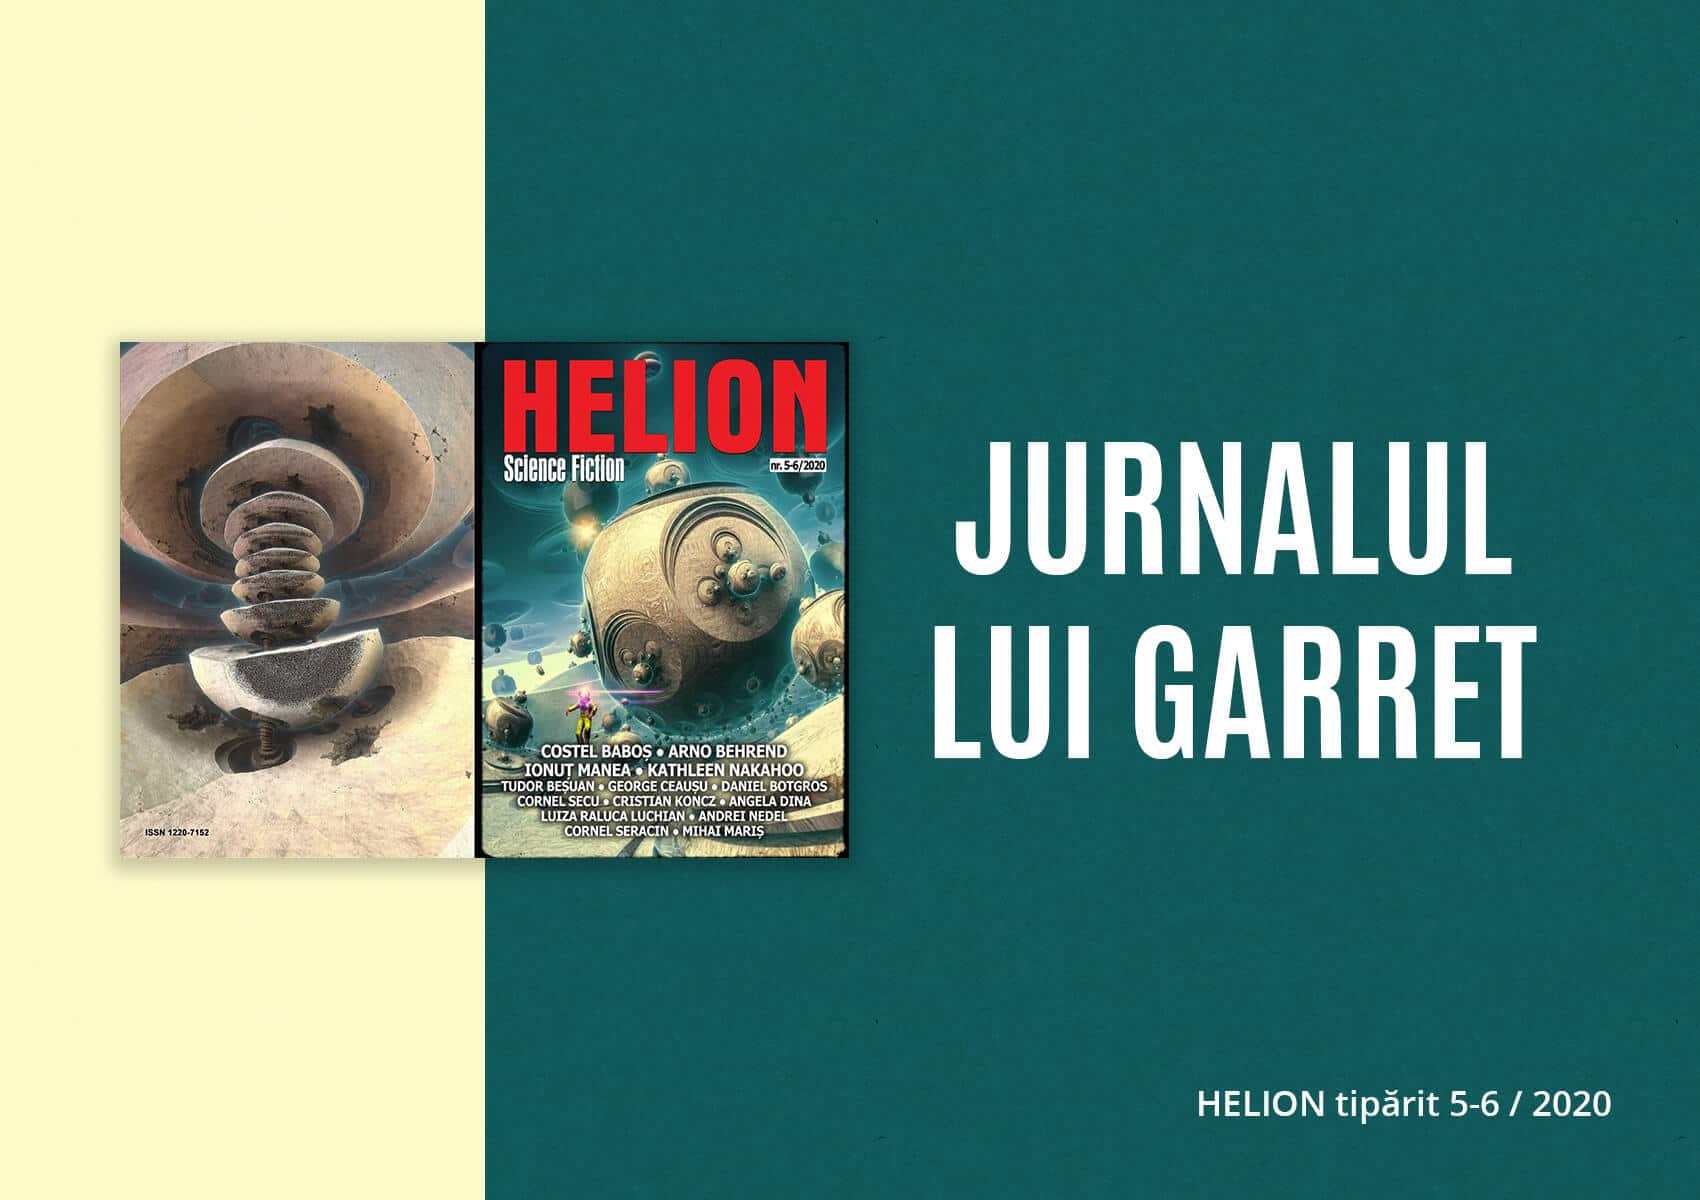 Jurnalul lui Garret în Helion tipărit 5-6/2020